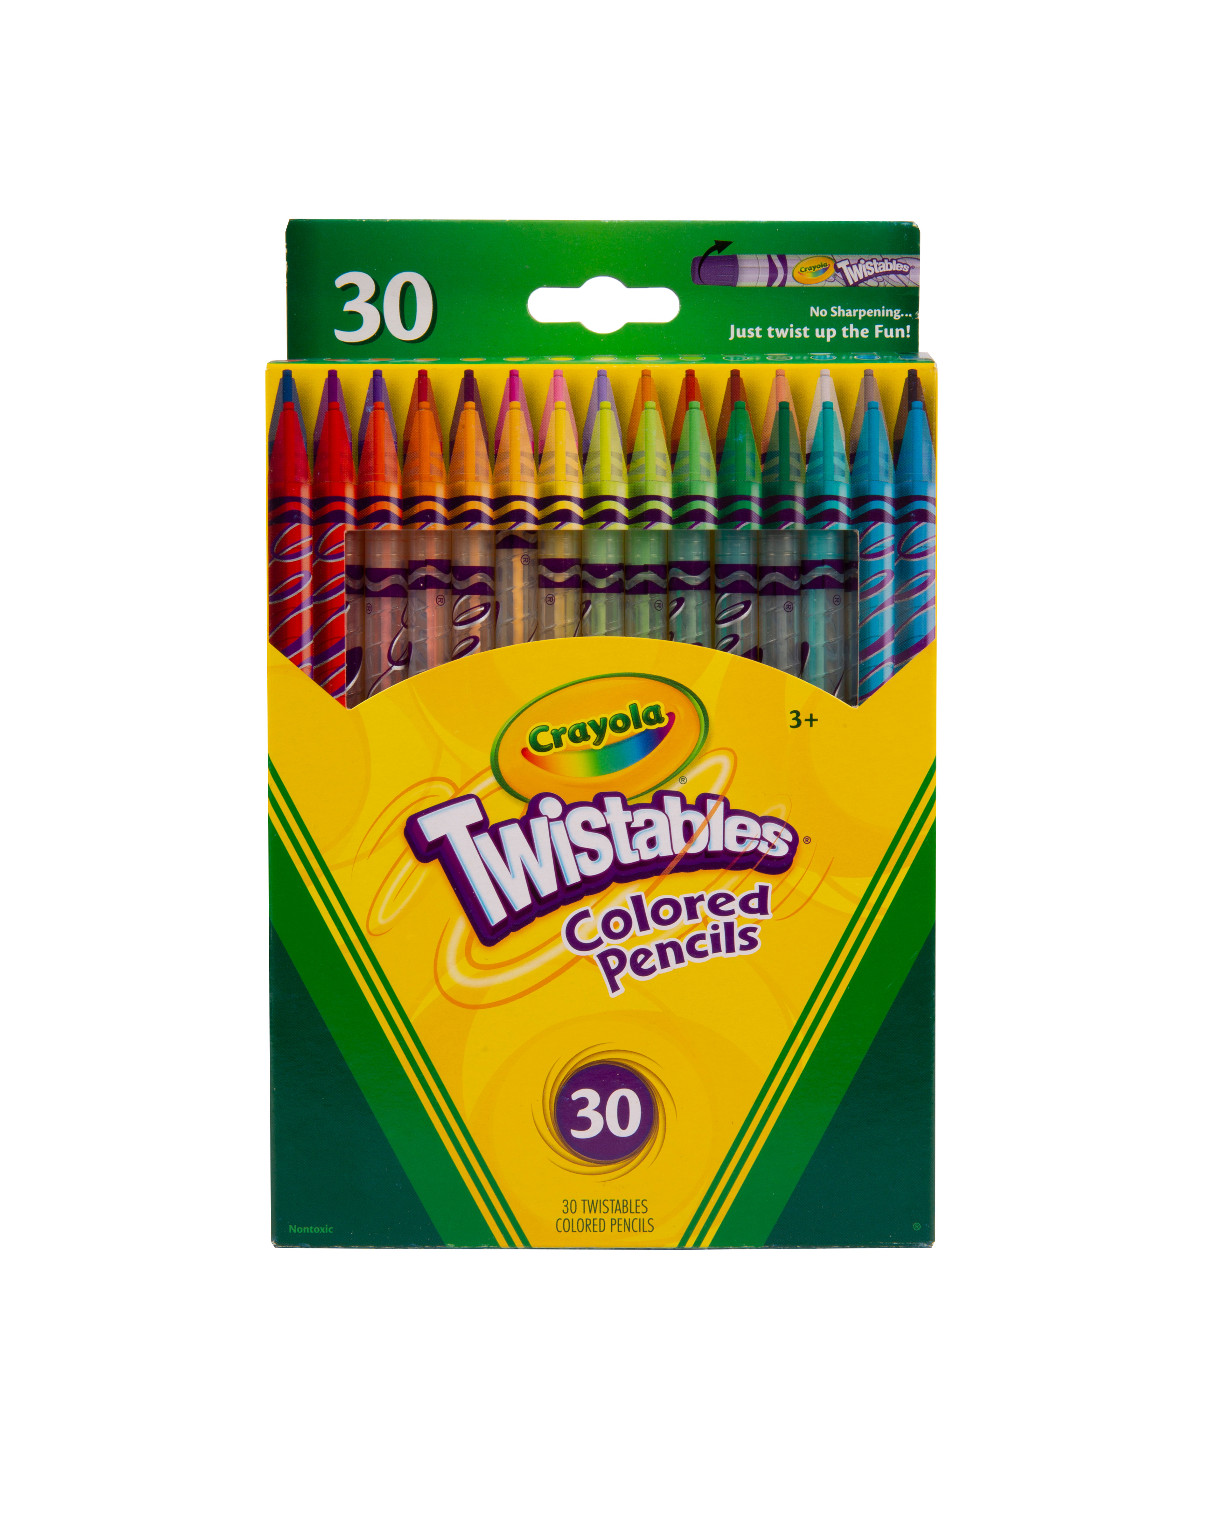 Crayola Twistables Colored Pencils, 30-Count